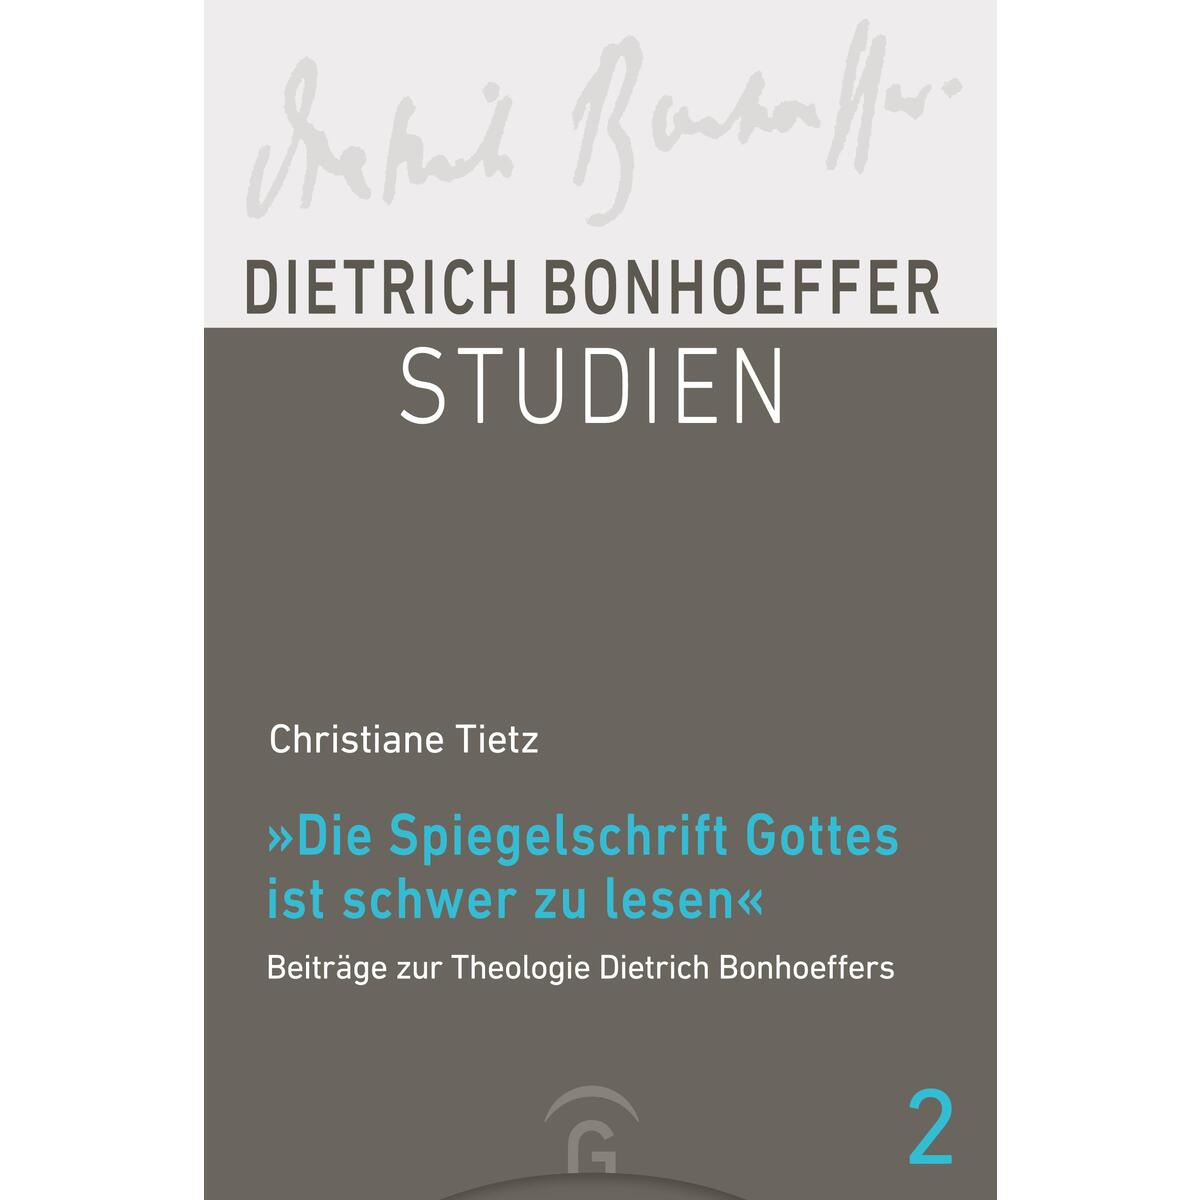 "Die Spiegelschrift Gottes ist schwer zu lesen" von Guetersloher Verlagshaus